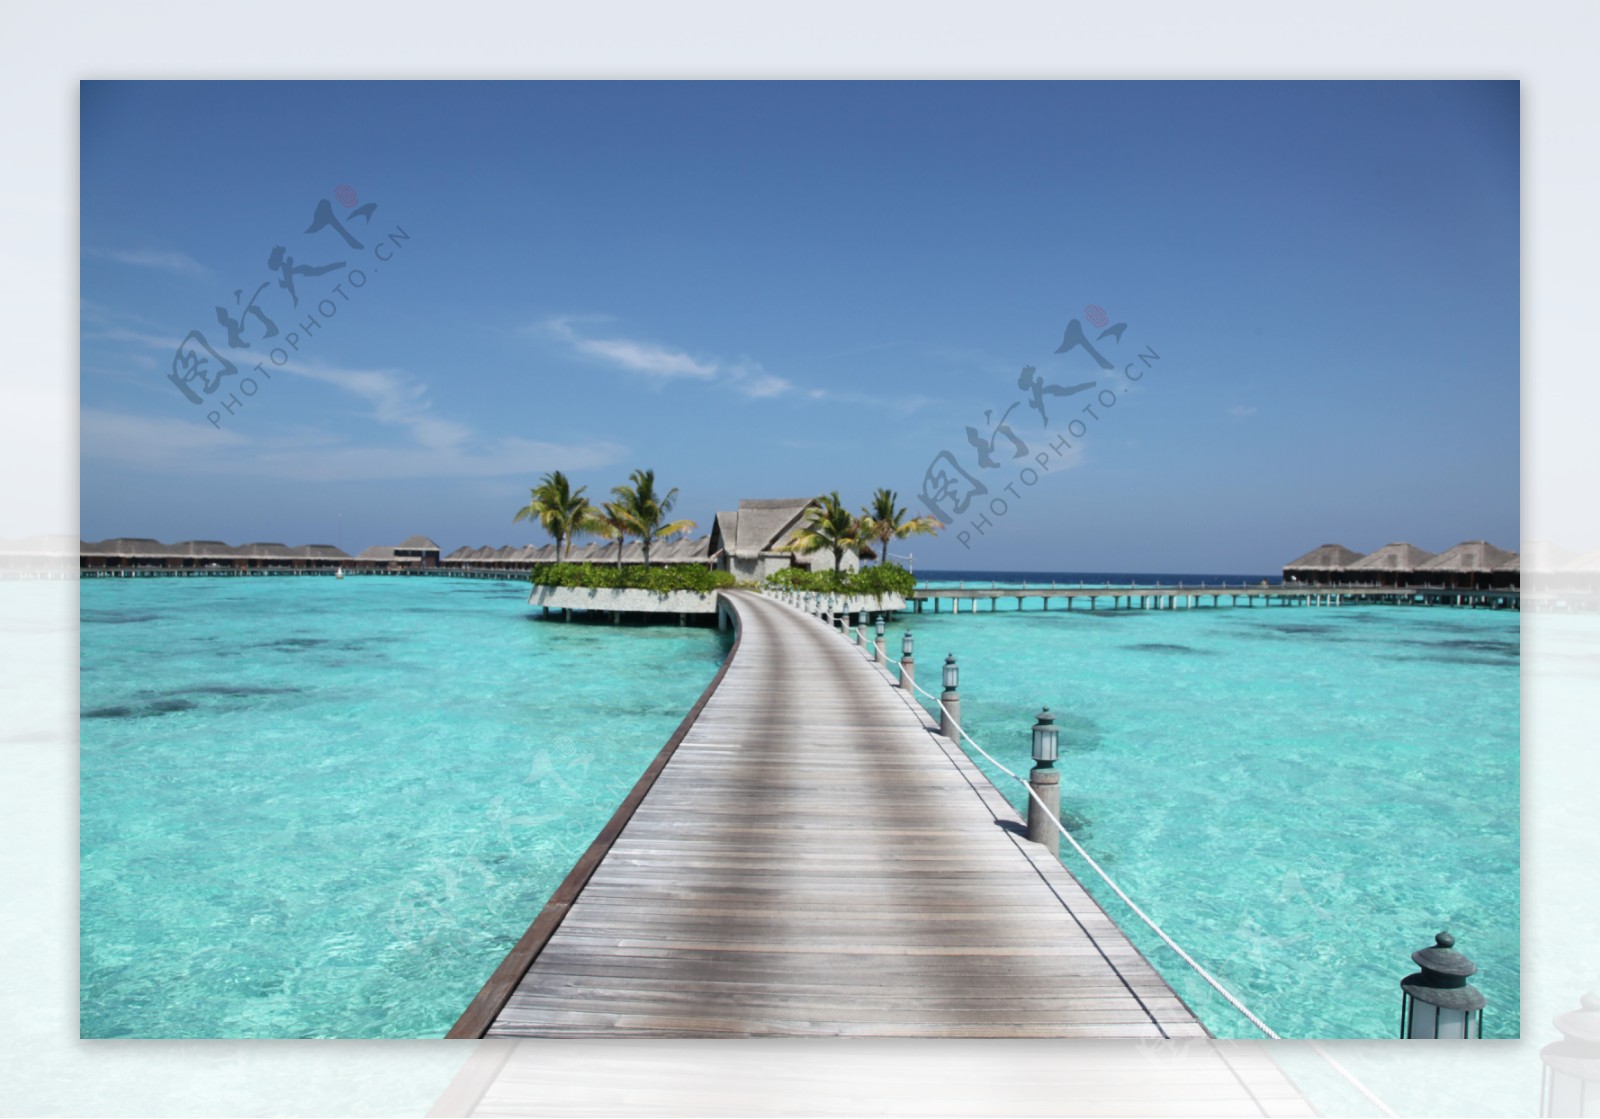 马尔代夫阿雅达岛图片